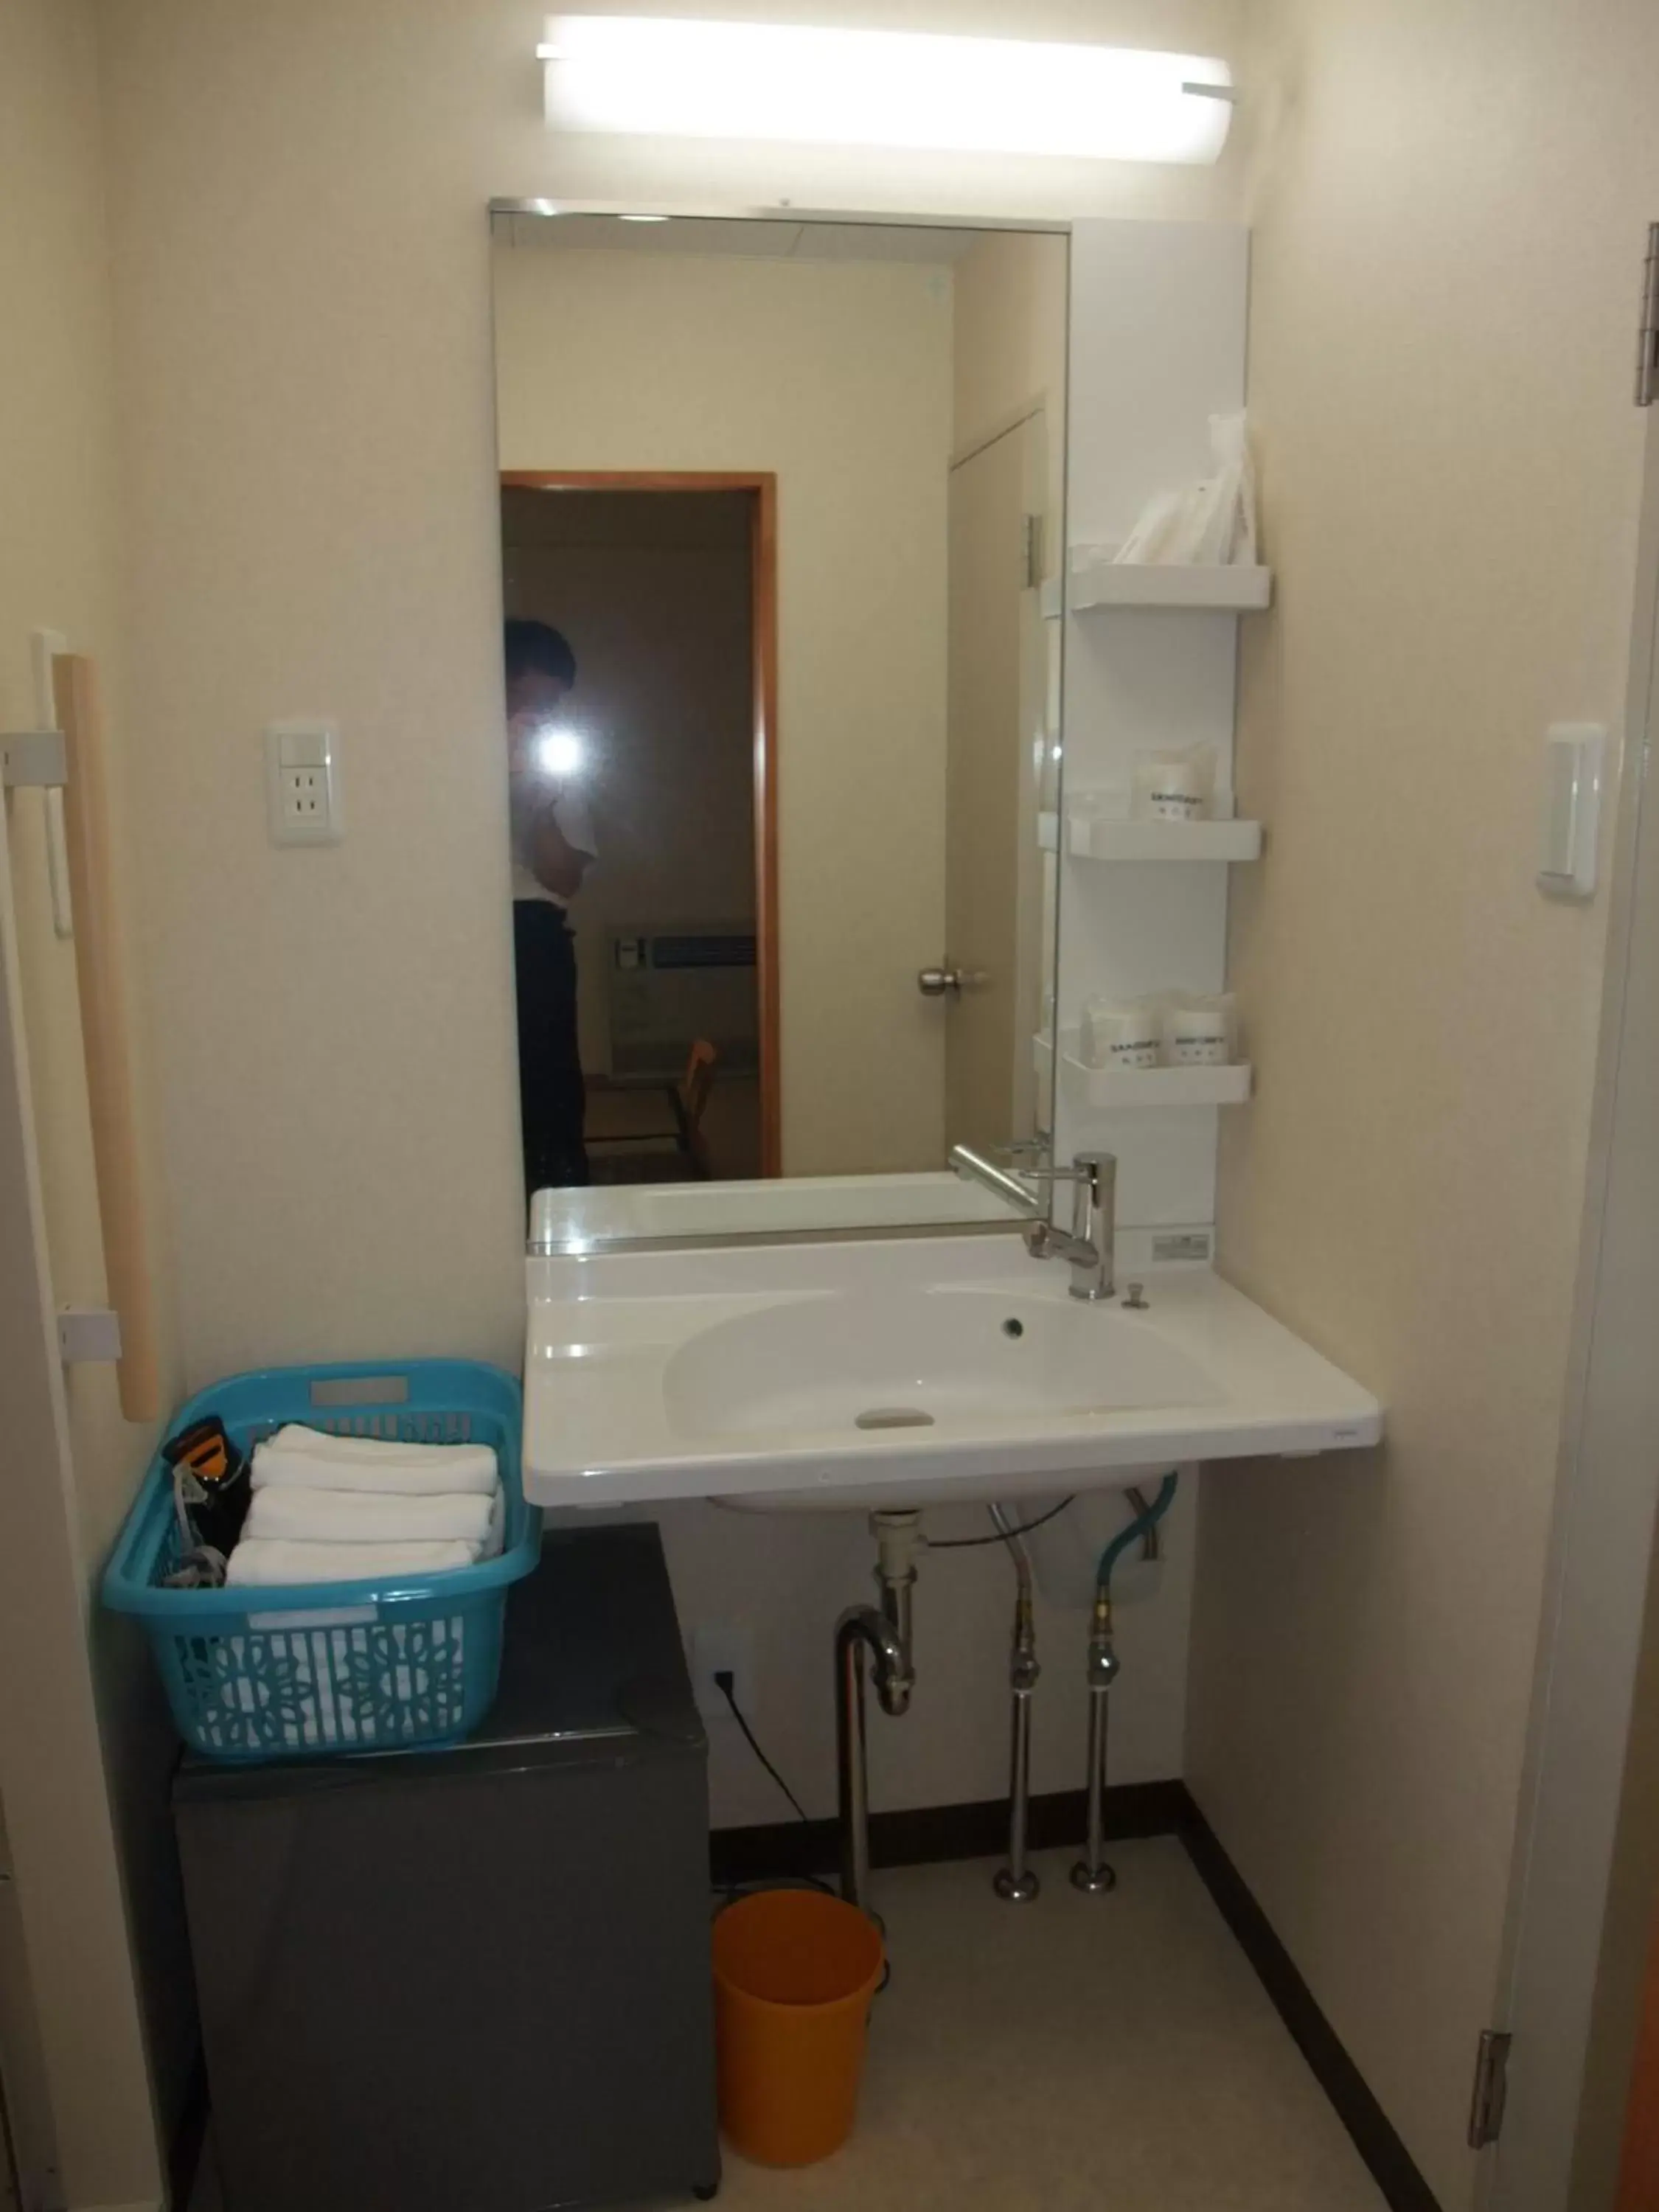 Area and facilities, Bathroom in Hotel Tateshina